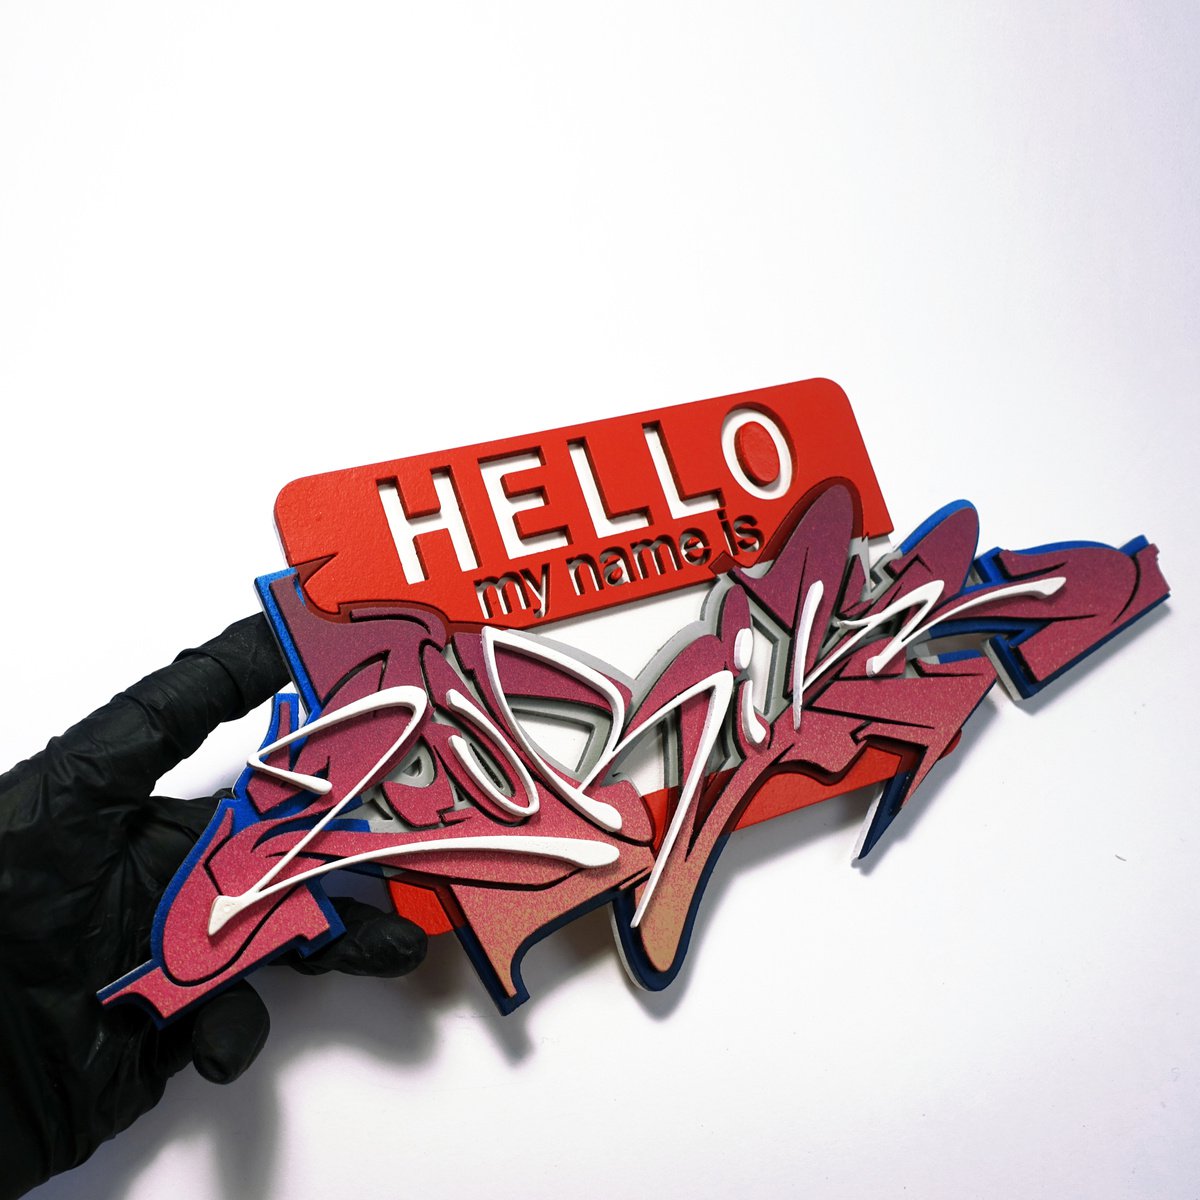 "HELLO MY NAME IS" | Original piece by ZuriK